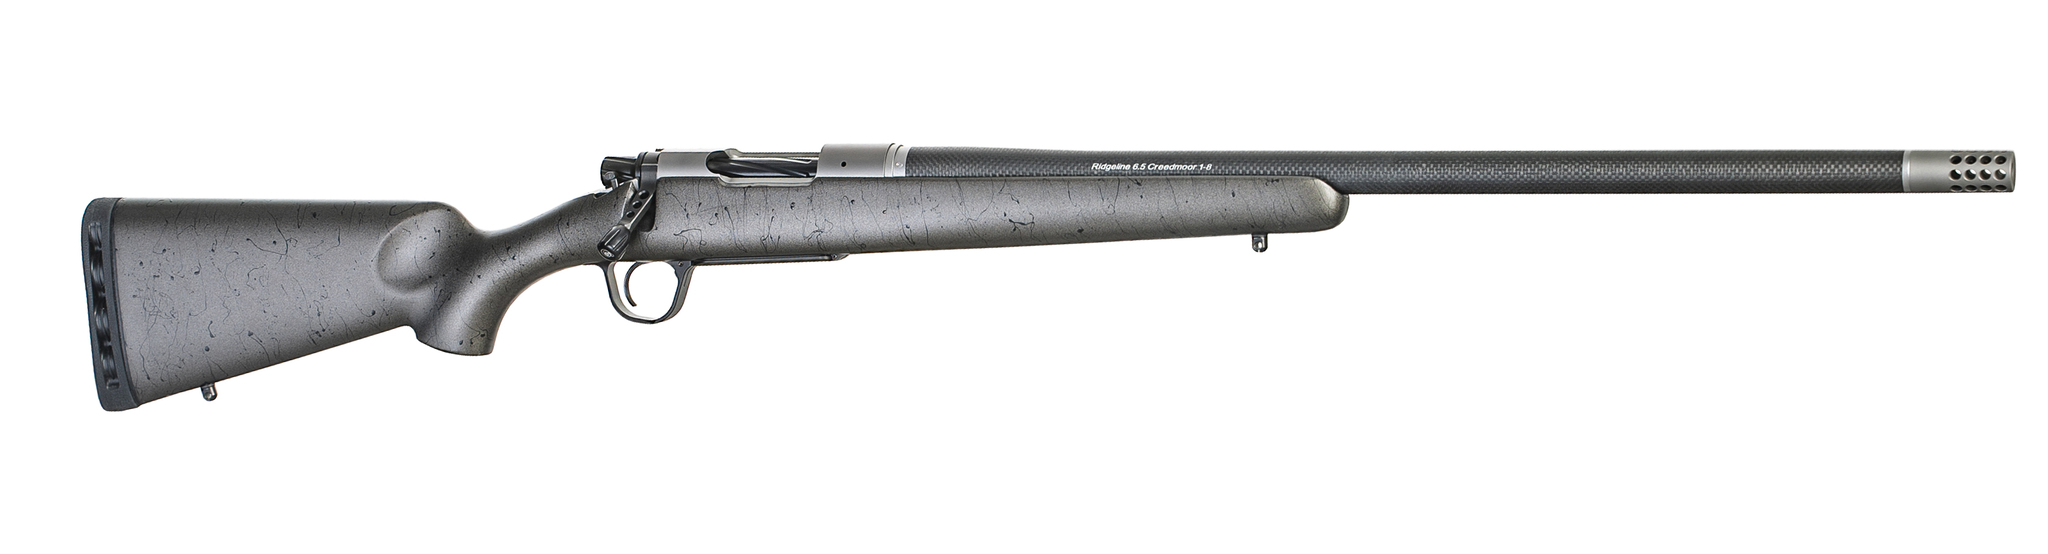 Christensen Arms Ridgeline Titanium 300 PRC